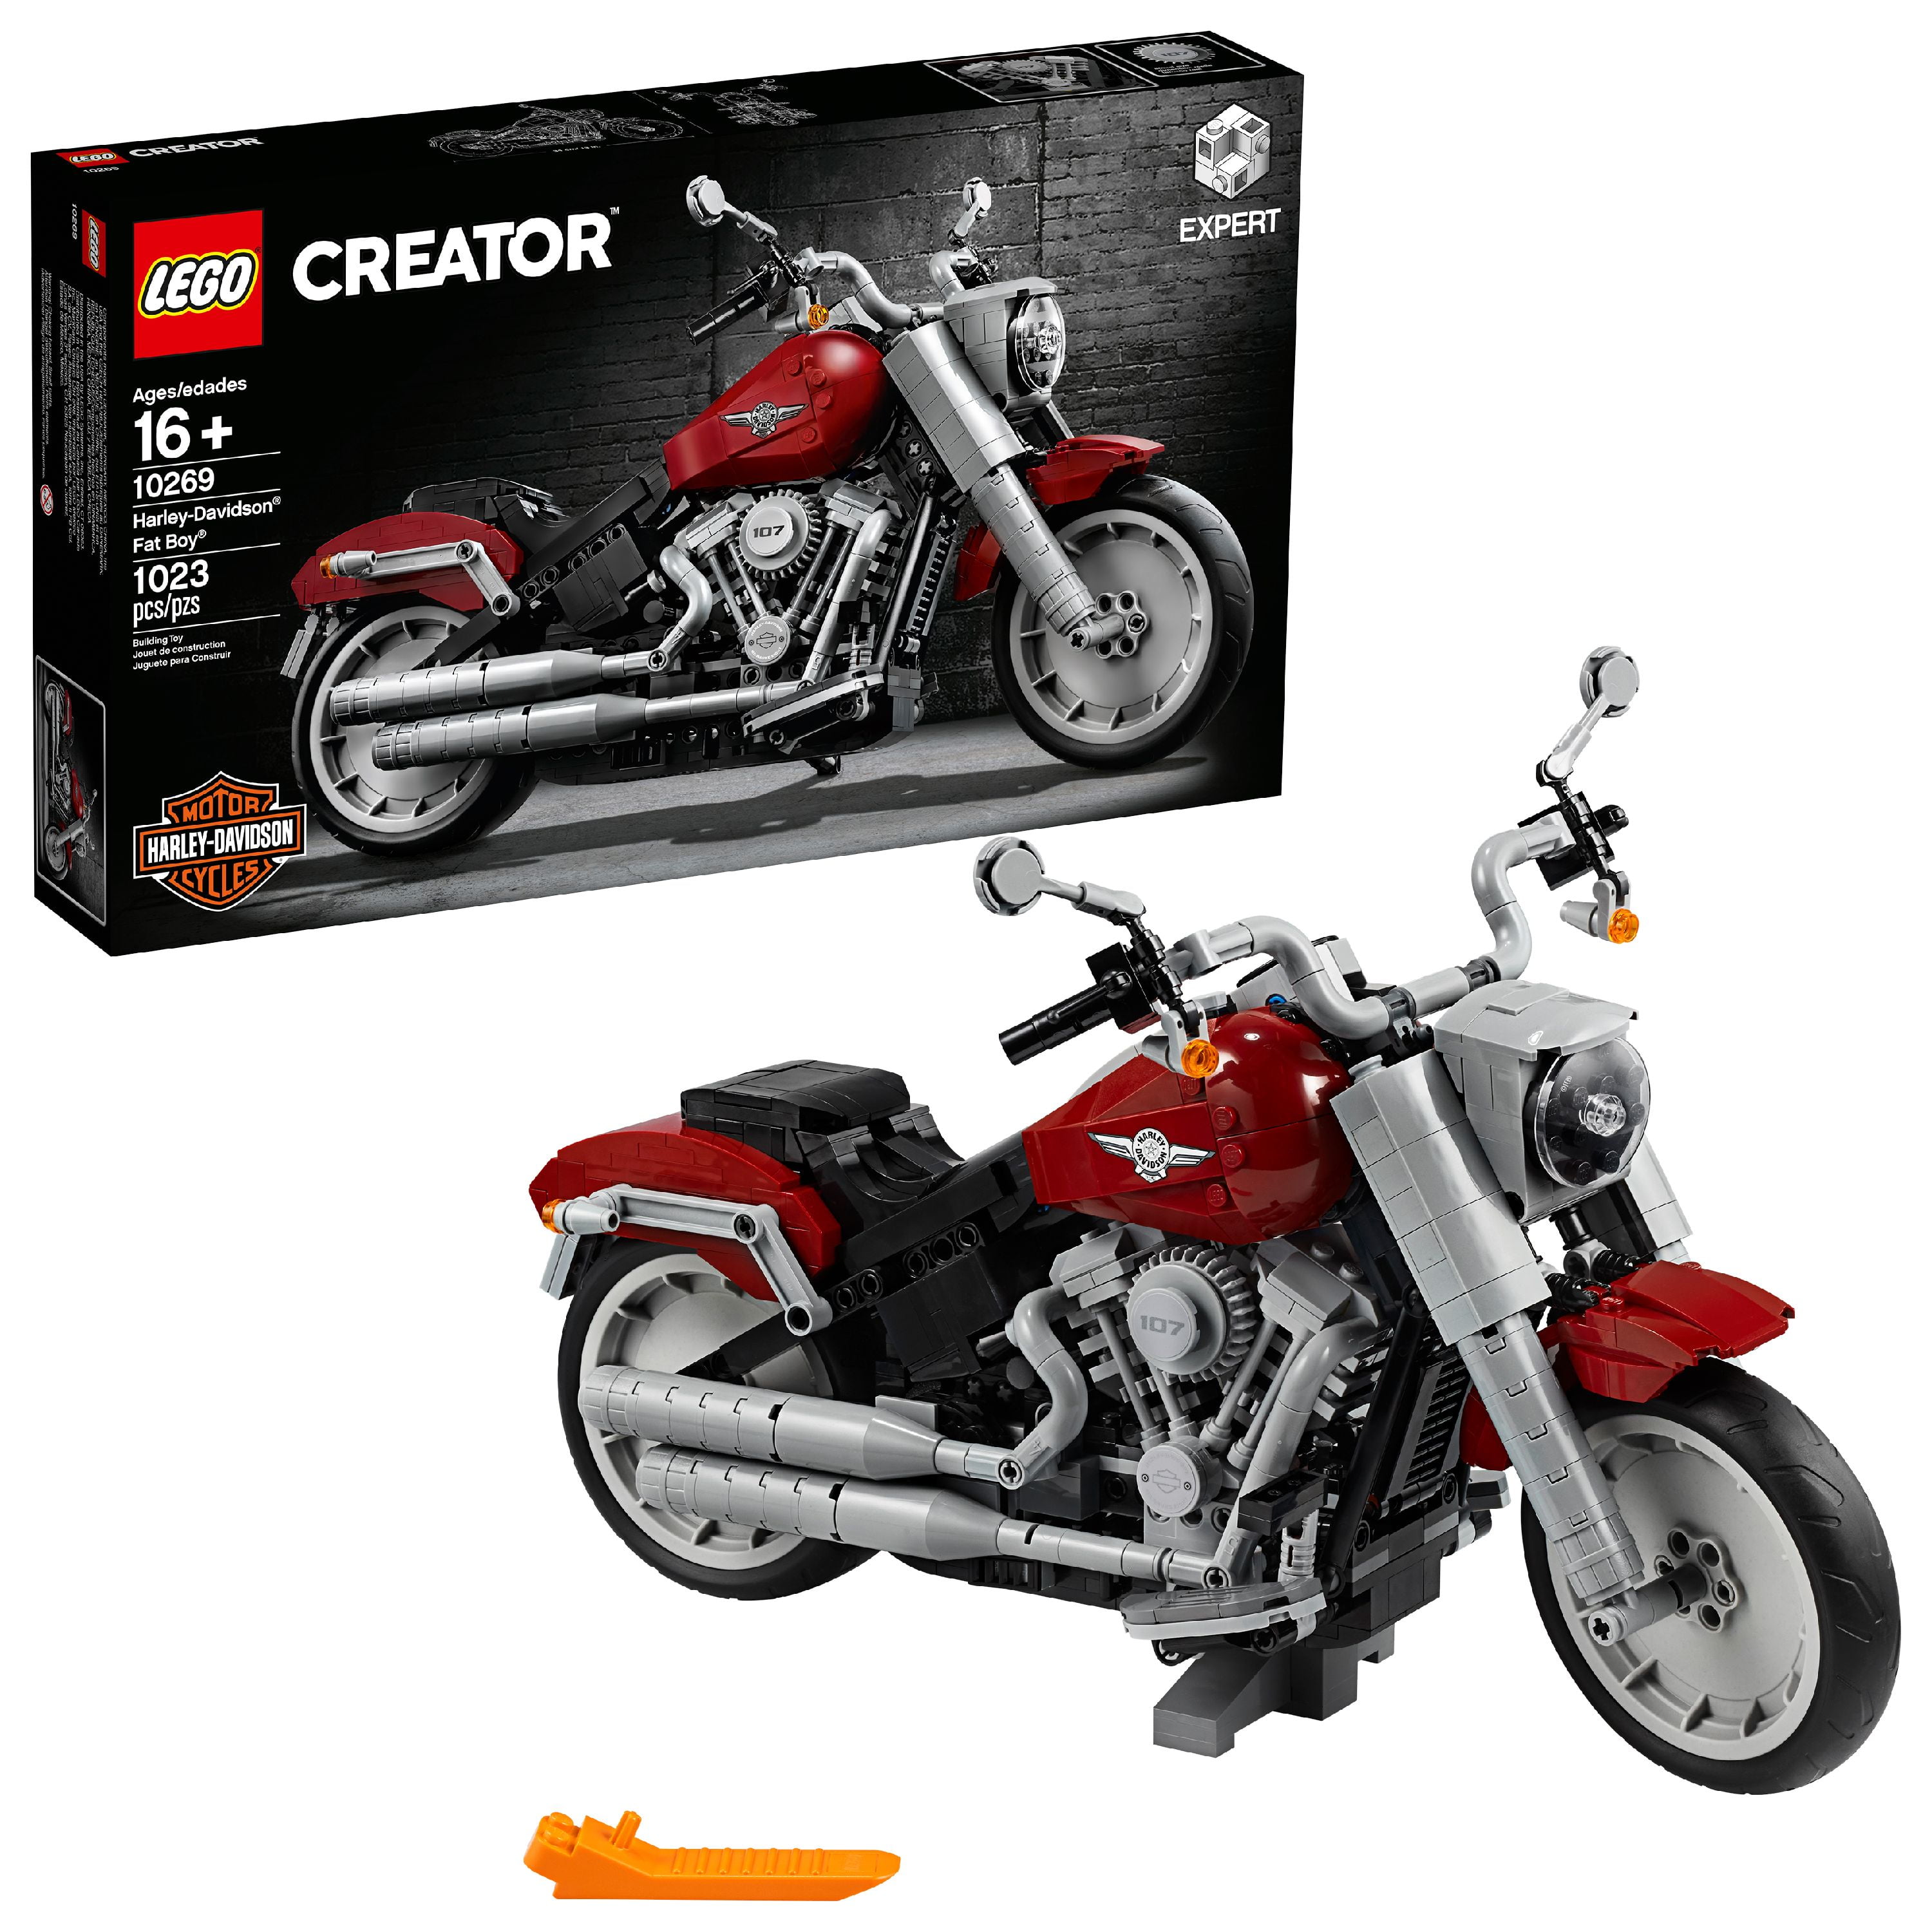 10269 for sale online Harley-Davidson Fat Boy LEGO Creator Expert